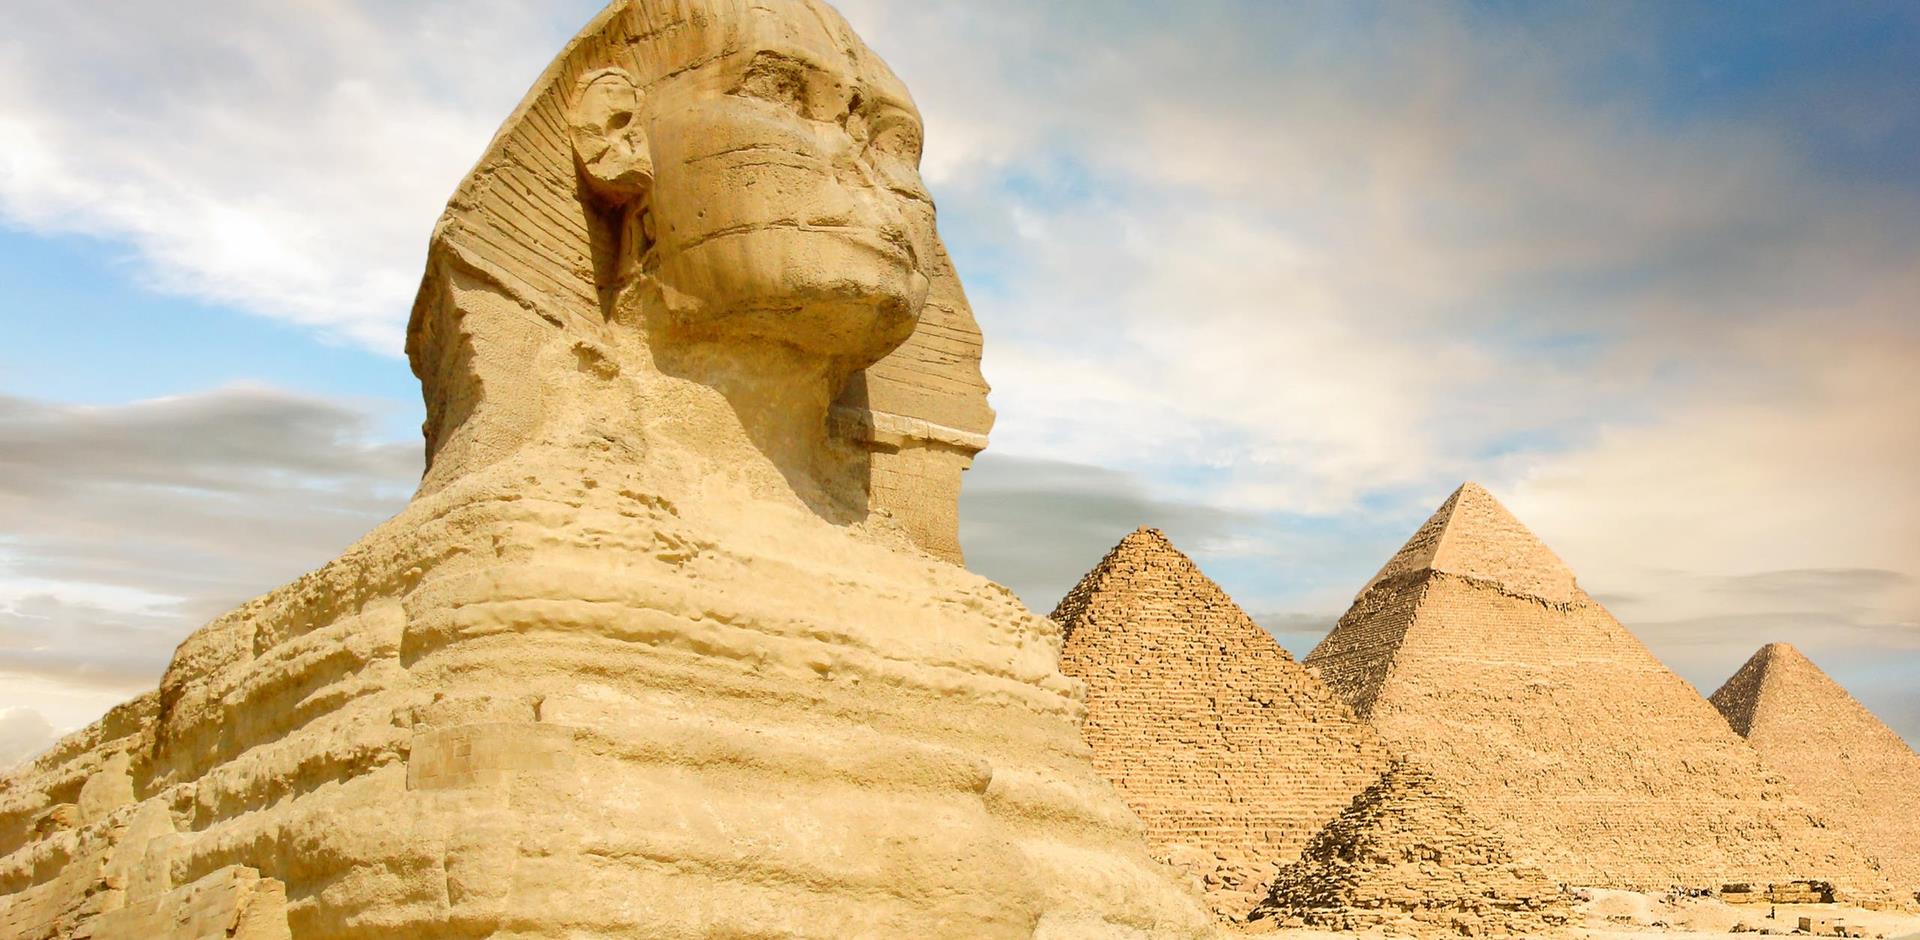 Sphinx, Cairo, Egypt